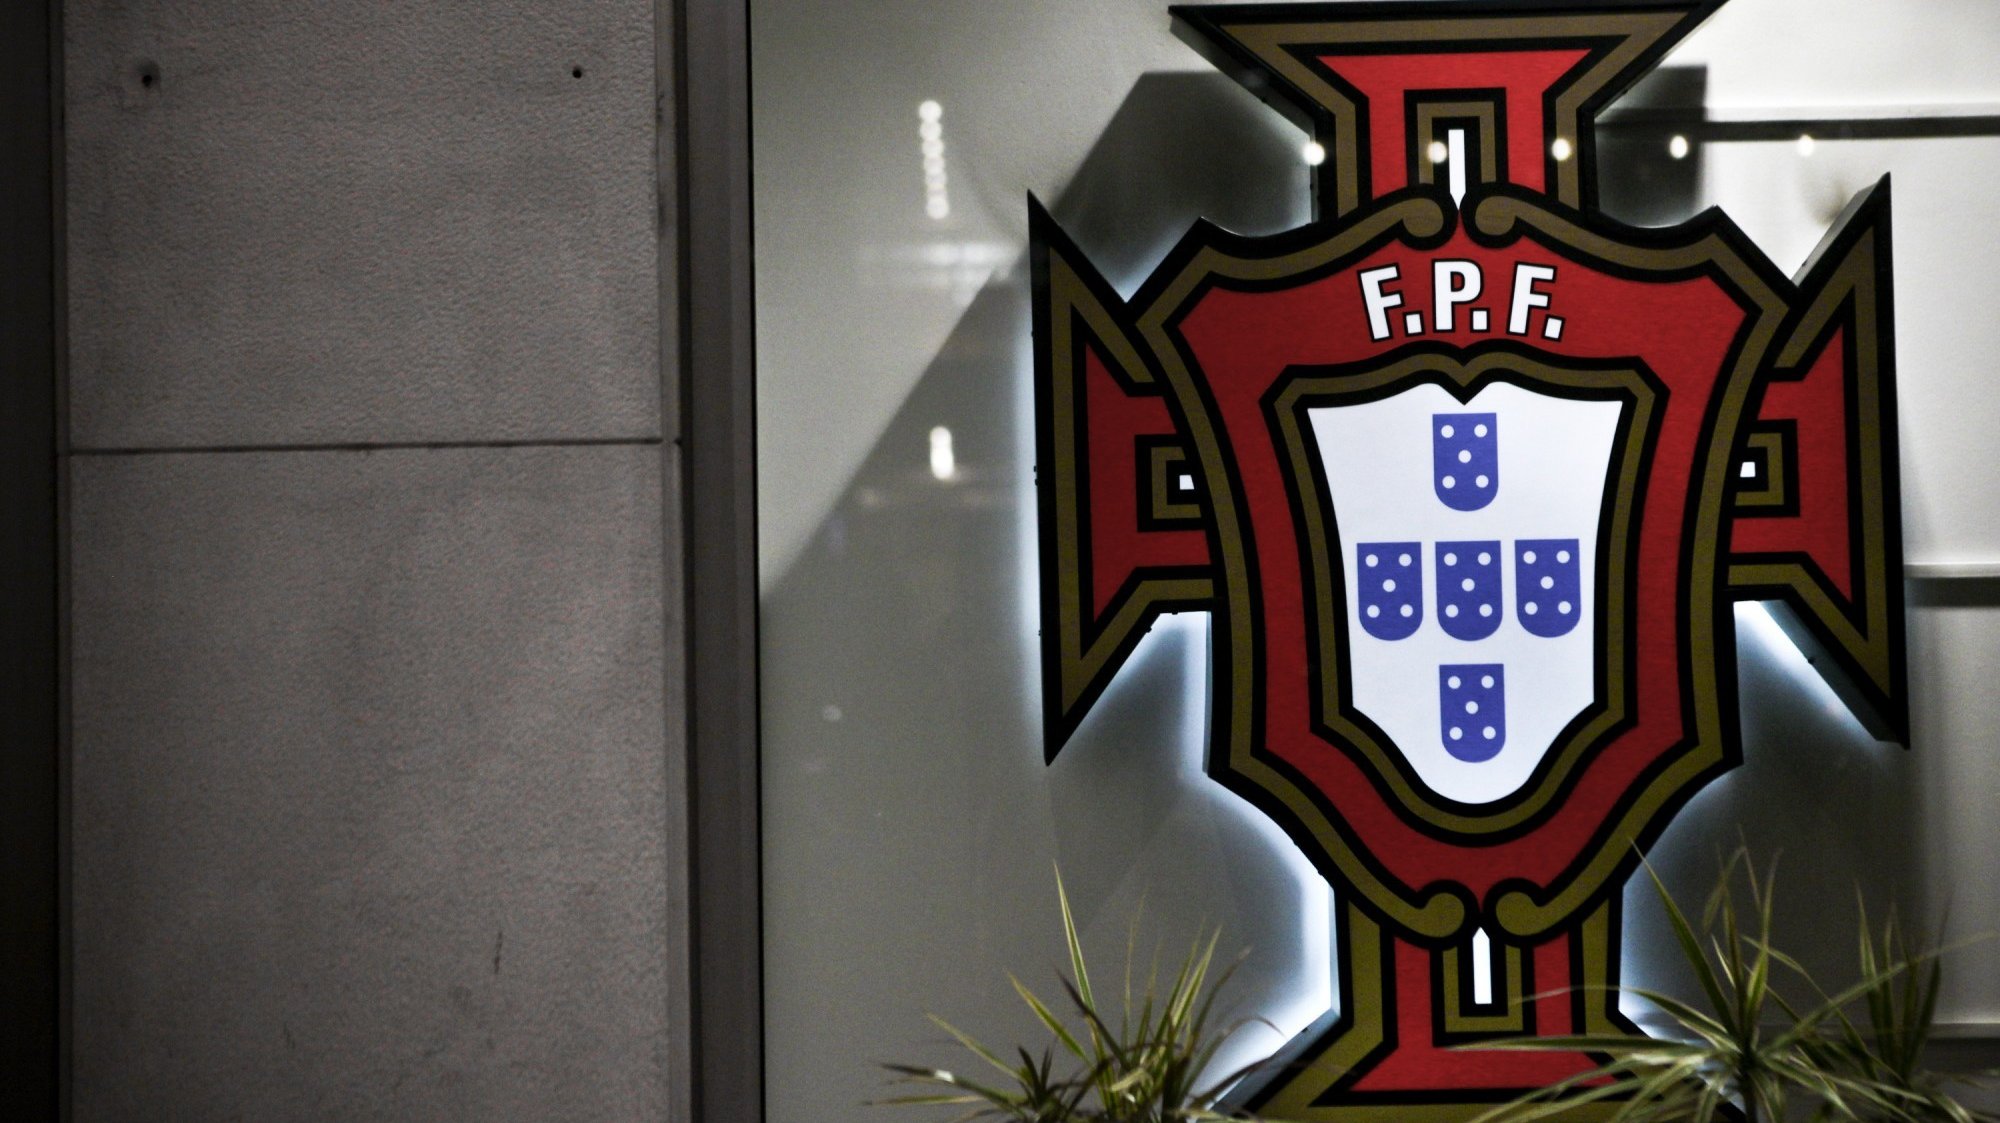 Nos próximos dois fins de semana, as duas competições profissionais de futebol que se disputam em Portugal vão estar paradas, devido a compromissos da seleção e à terceira eliminatória da Taça de Portugal